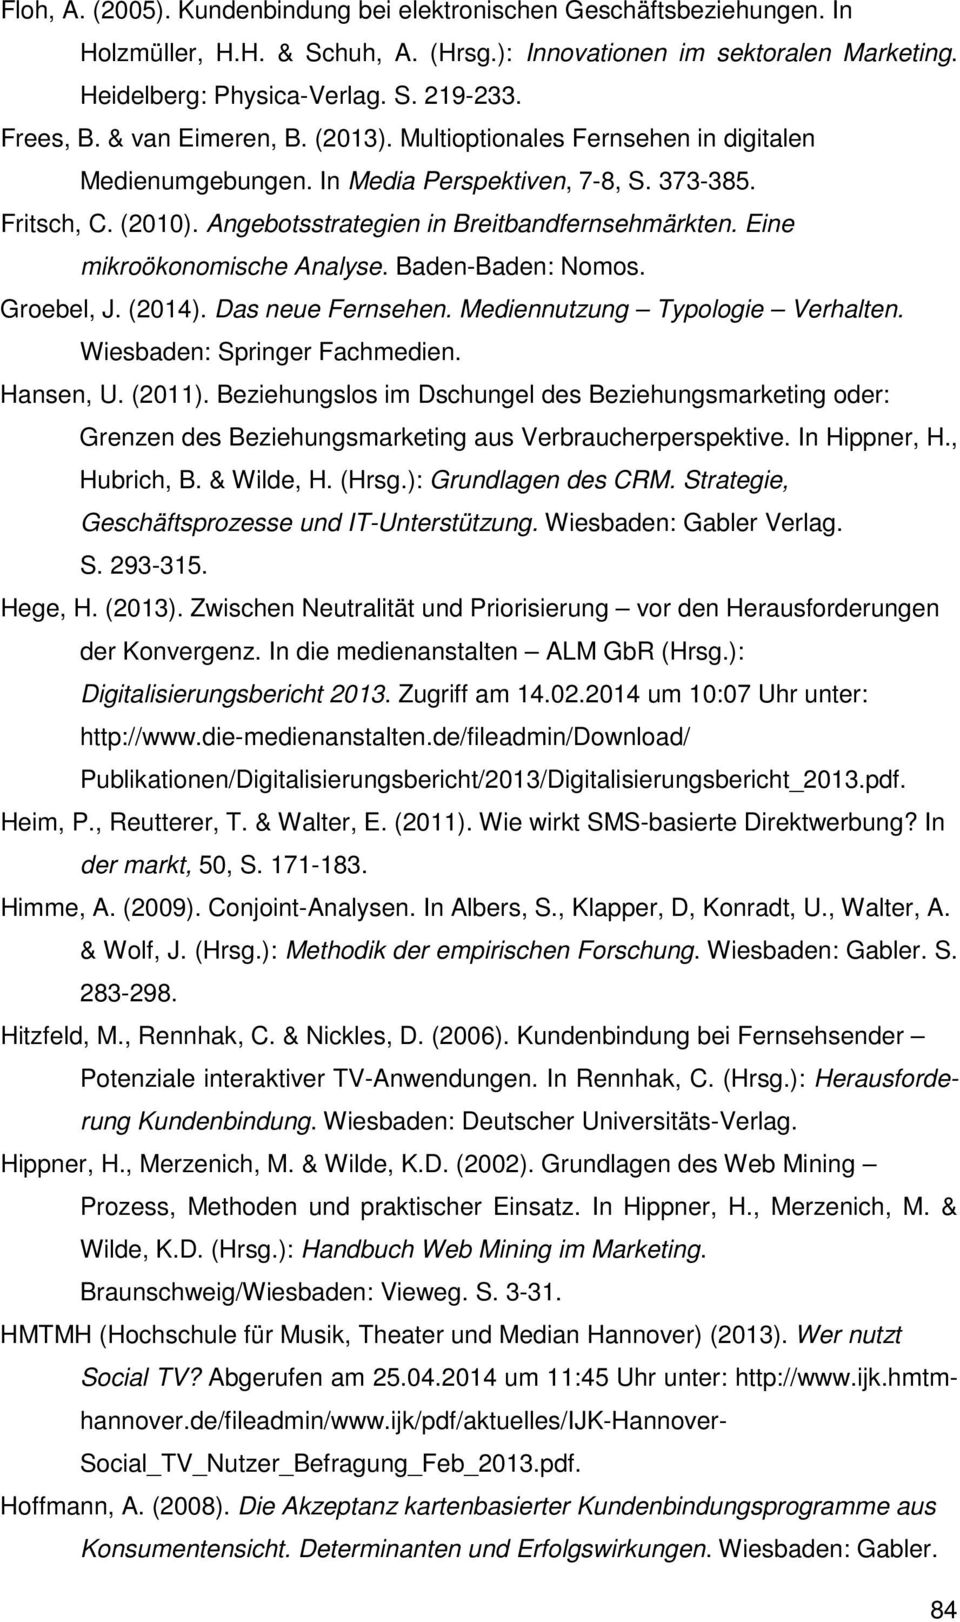 Eine mikroökonomische Analyse. Baden-Baden: Nomos. Groebel, J. (2014). Das neue Fernsehen. Mediennutzung Typologie Verhalten. Wiesbaden: Springer Fachmedien. Hansen, U. (2011).